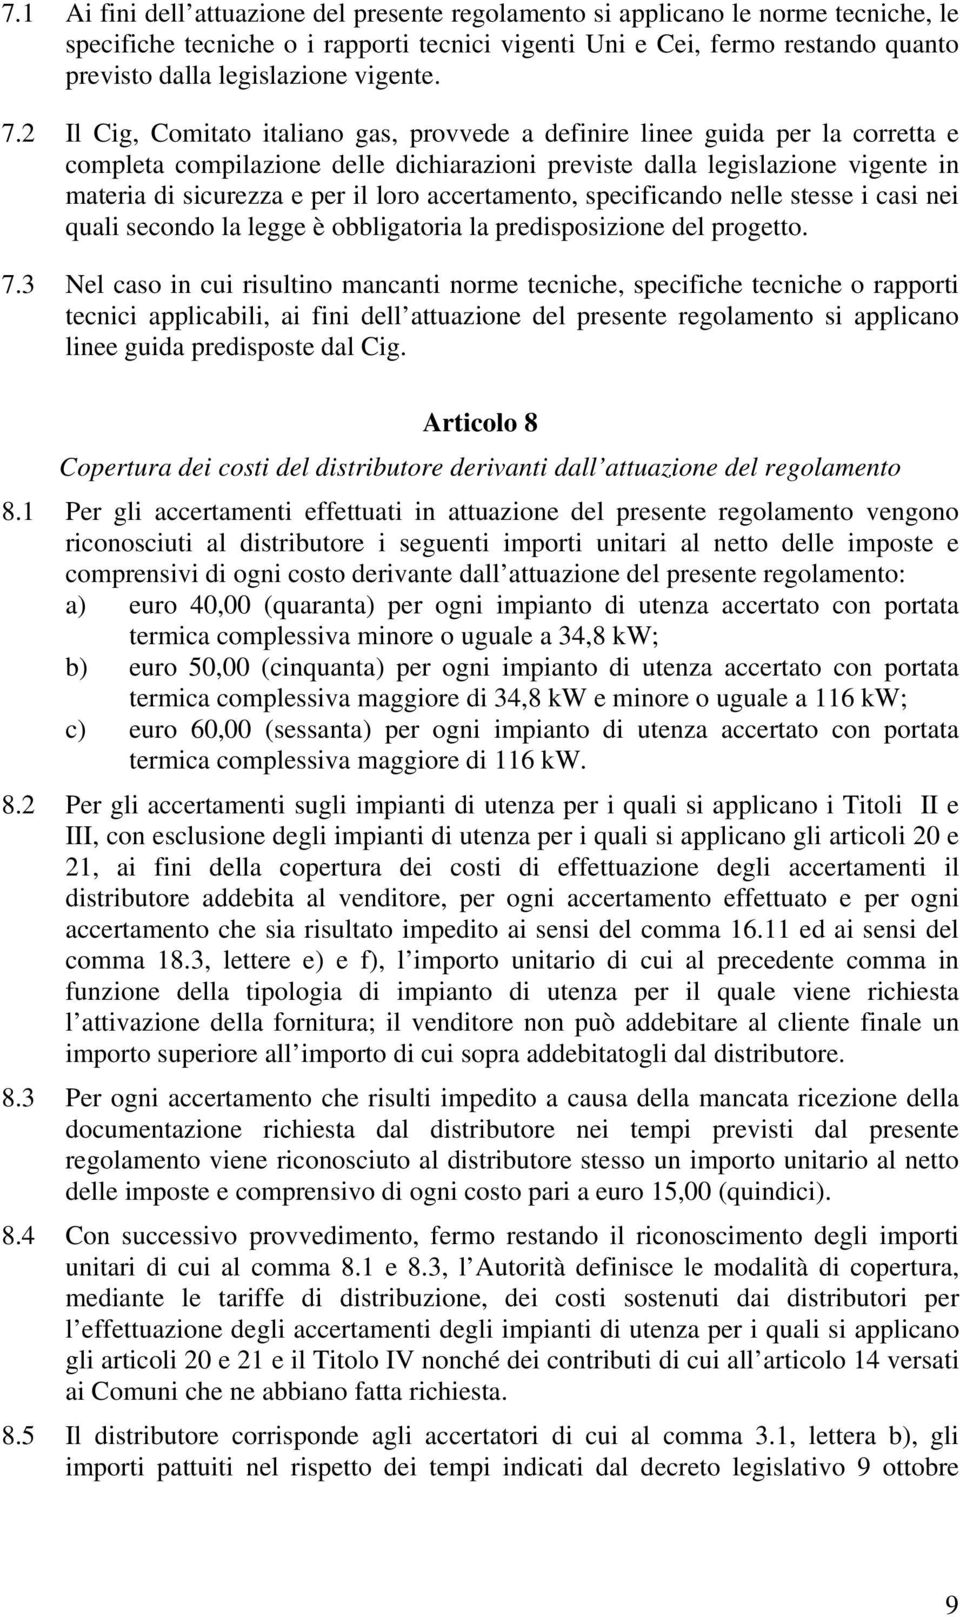 2 Il Cig, Comitato italiano gas, provvede a definire linee guida per la corretta e completa compilazione delle dichiarazioni previste dalla legislazione vigente in materia di sicurezza e per il loro